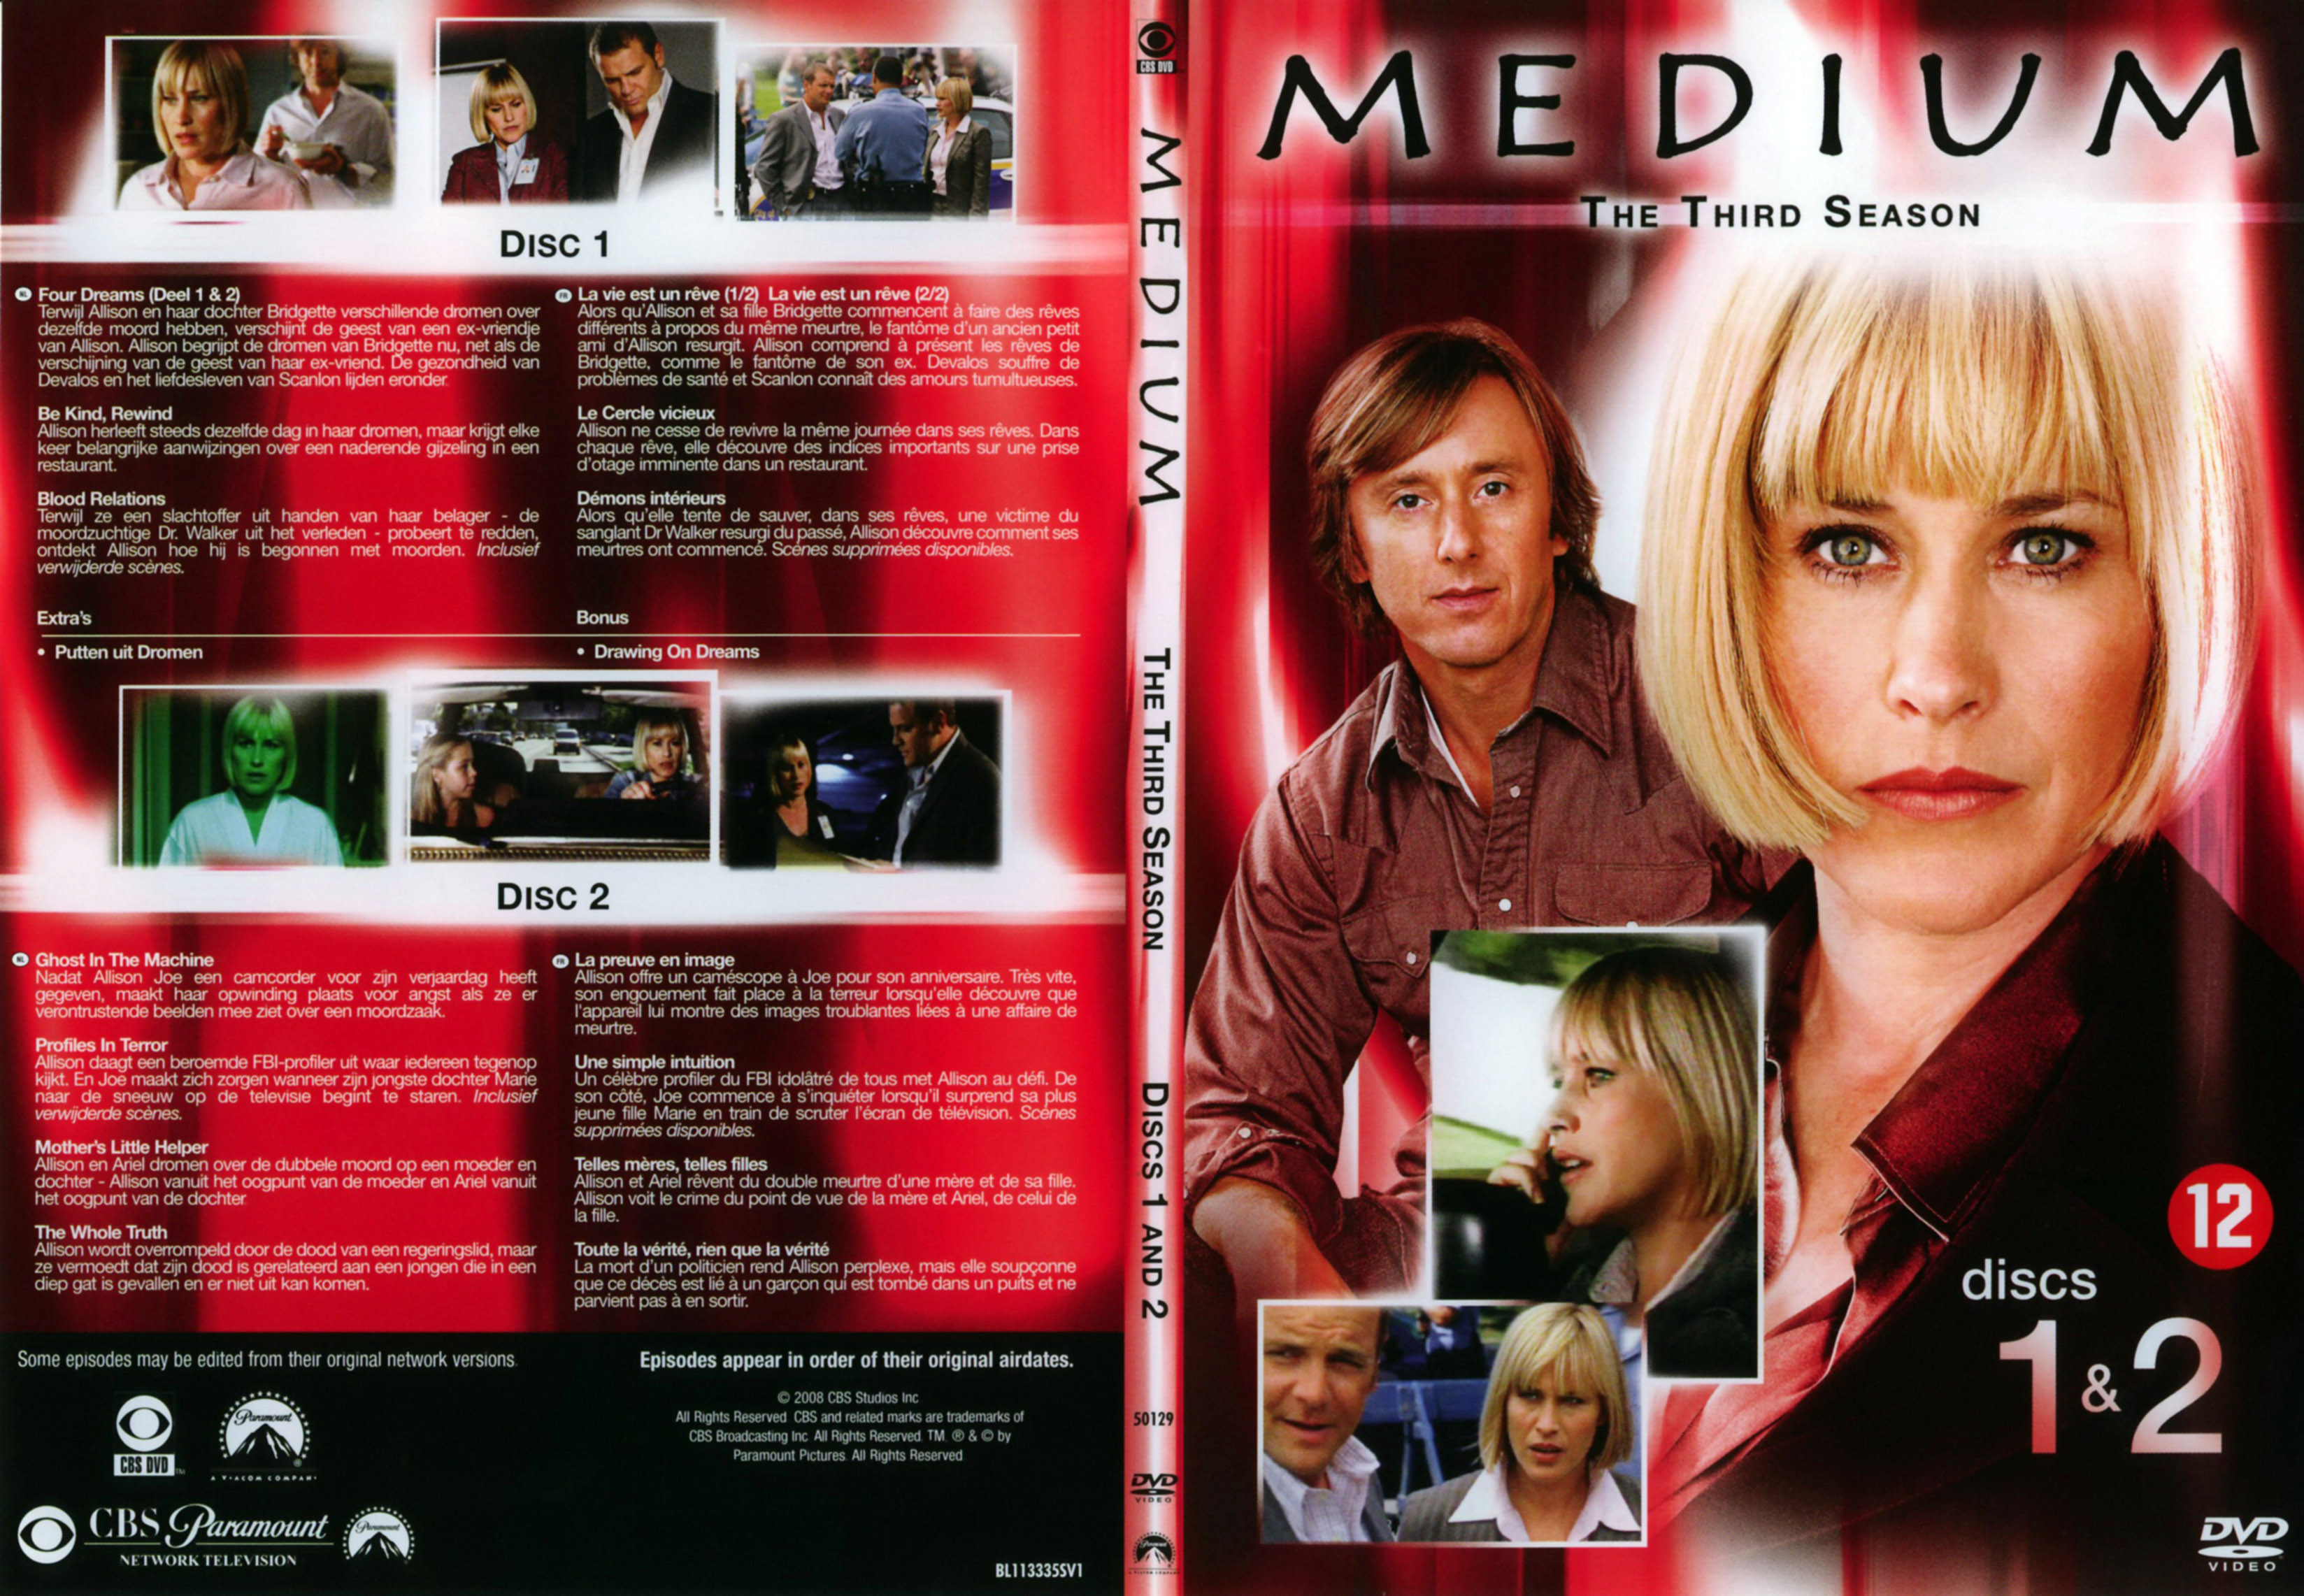 Jaquette DVD Mdium Saison 3 DVD 1